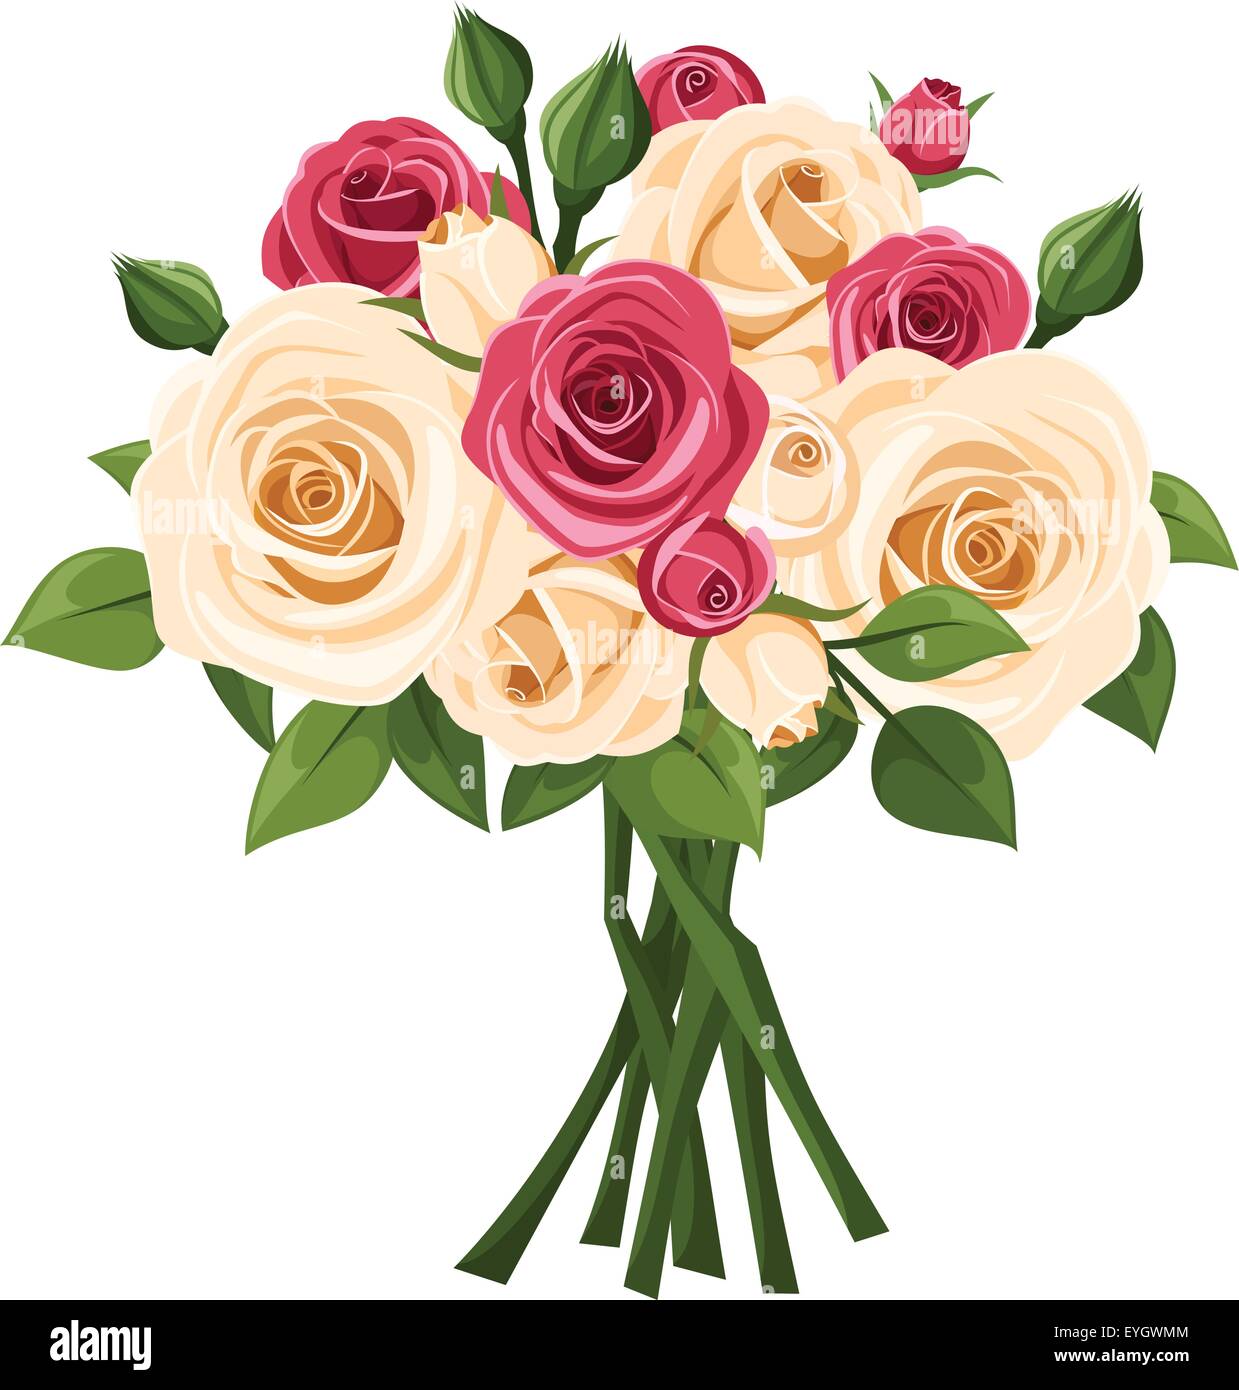 Bouquet von roten und weißen Rosen. Vektor-Illustration. Stock Vektor